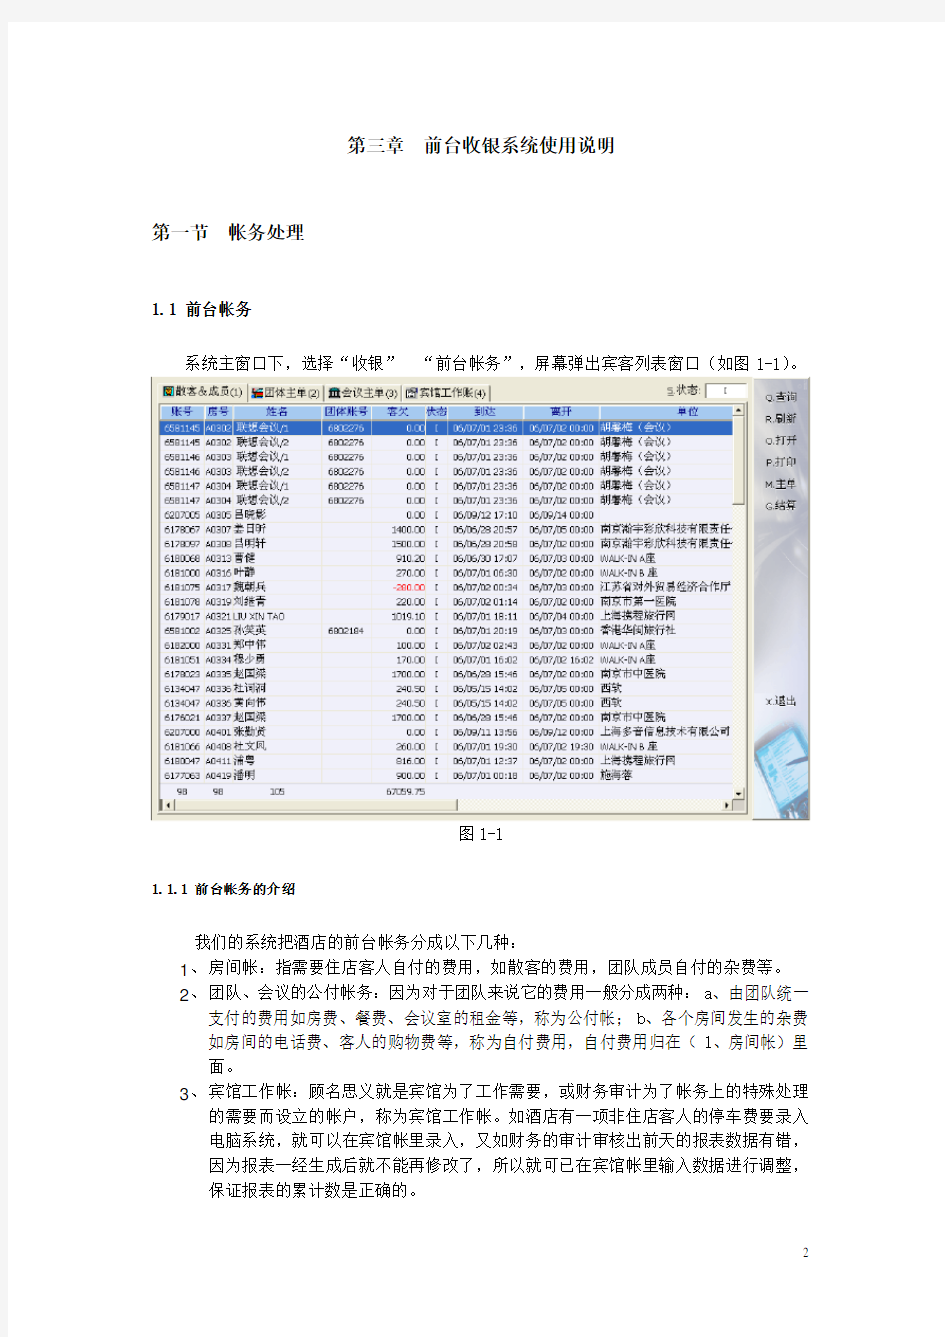 西软-前台收银系统使用说明书(电子档)